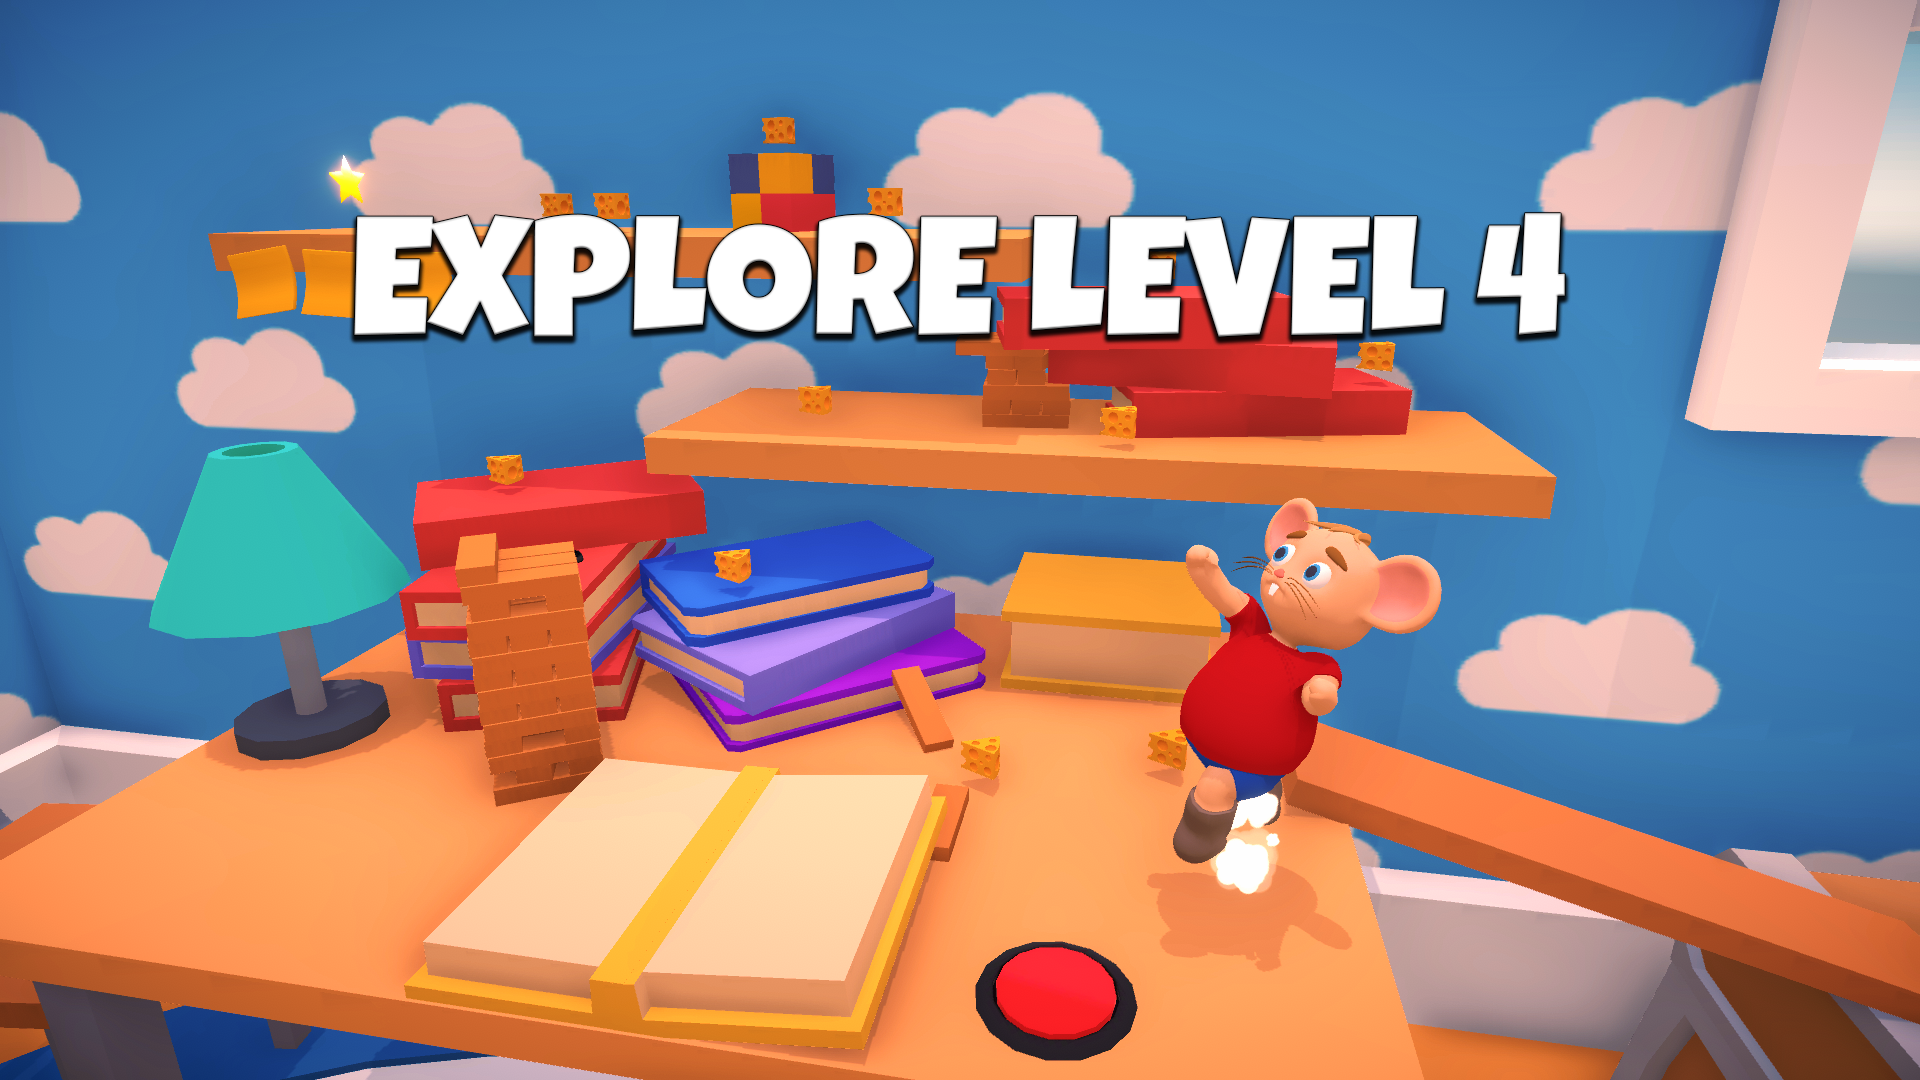 Explore Level 4